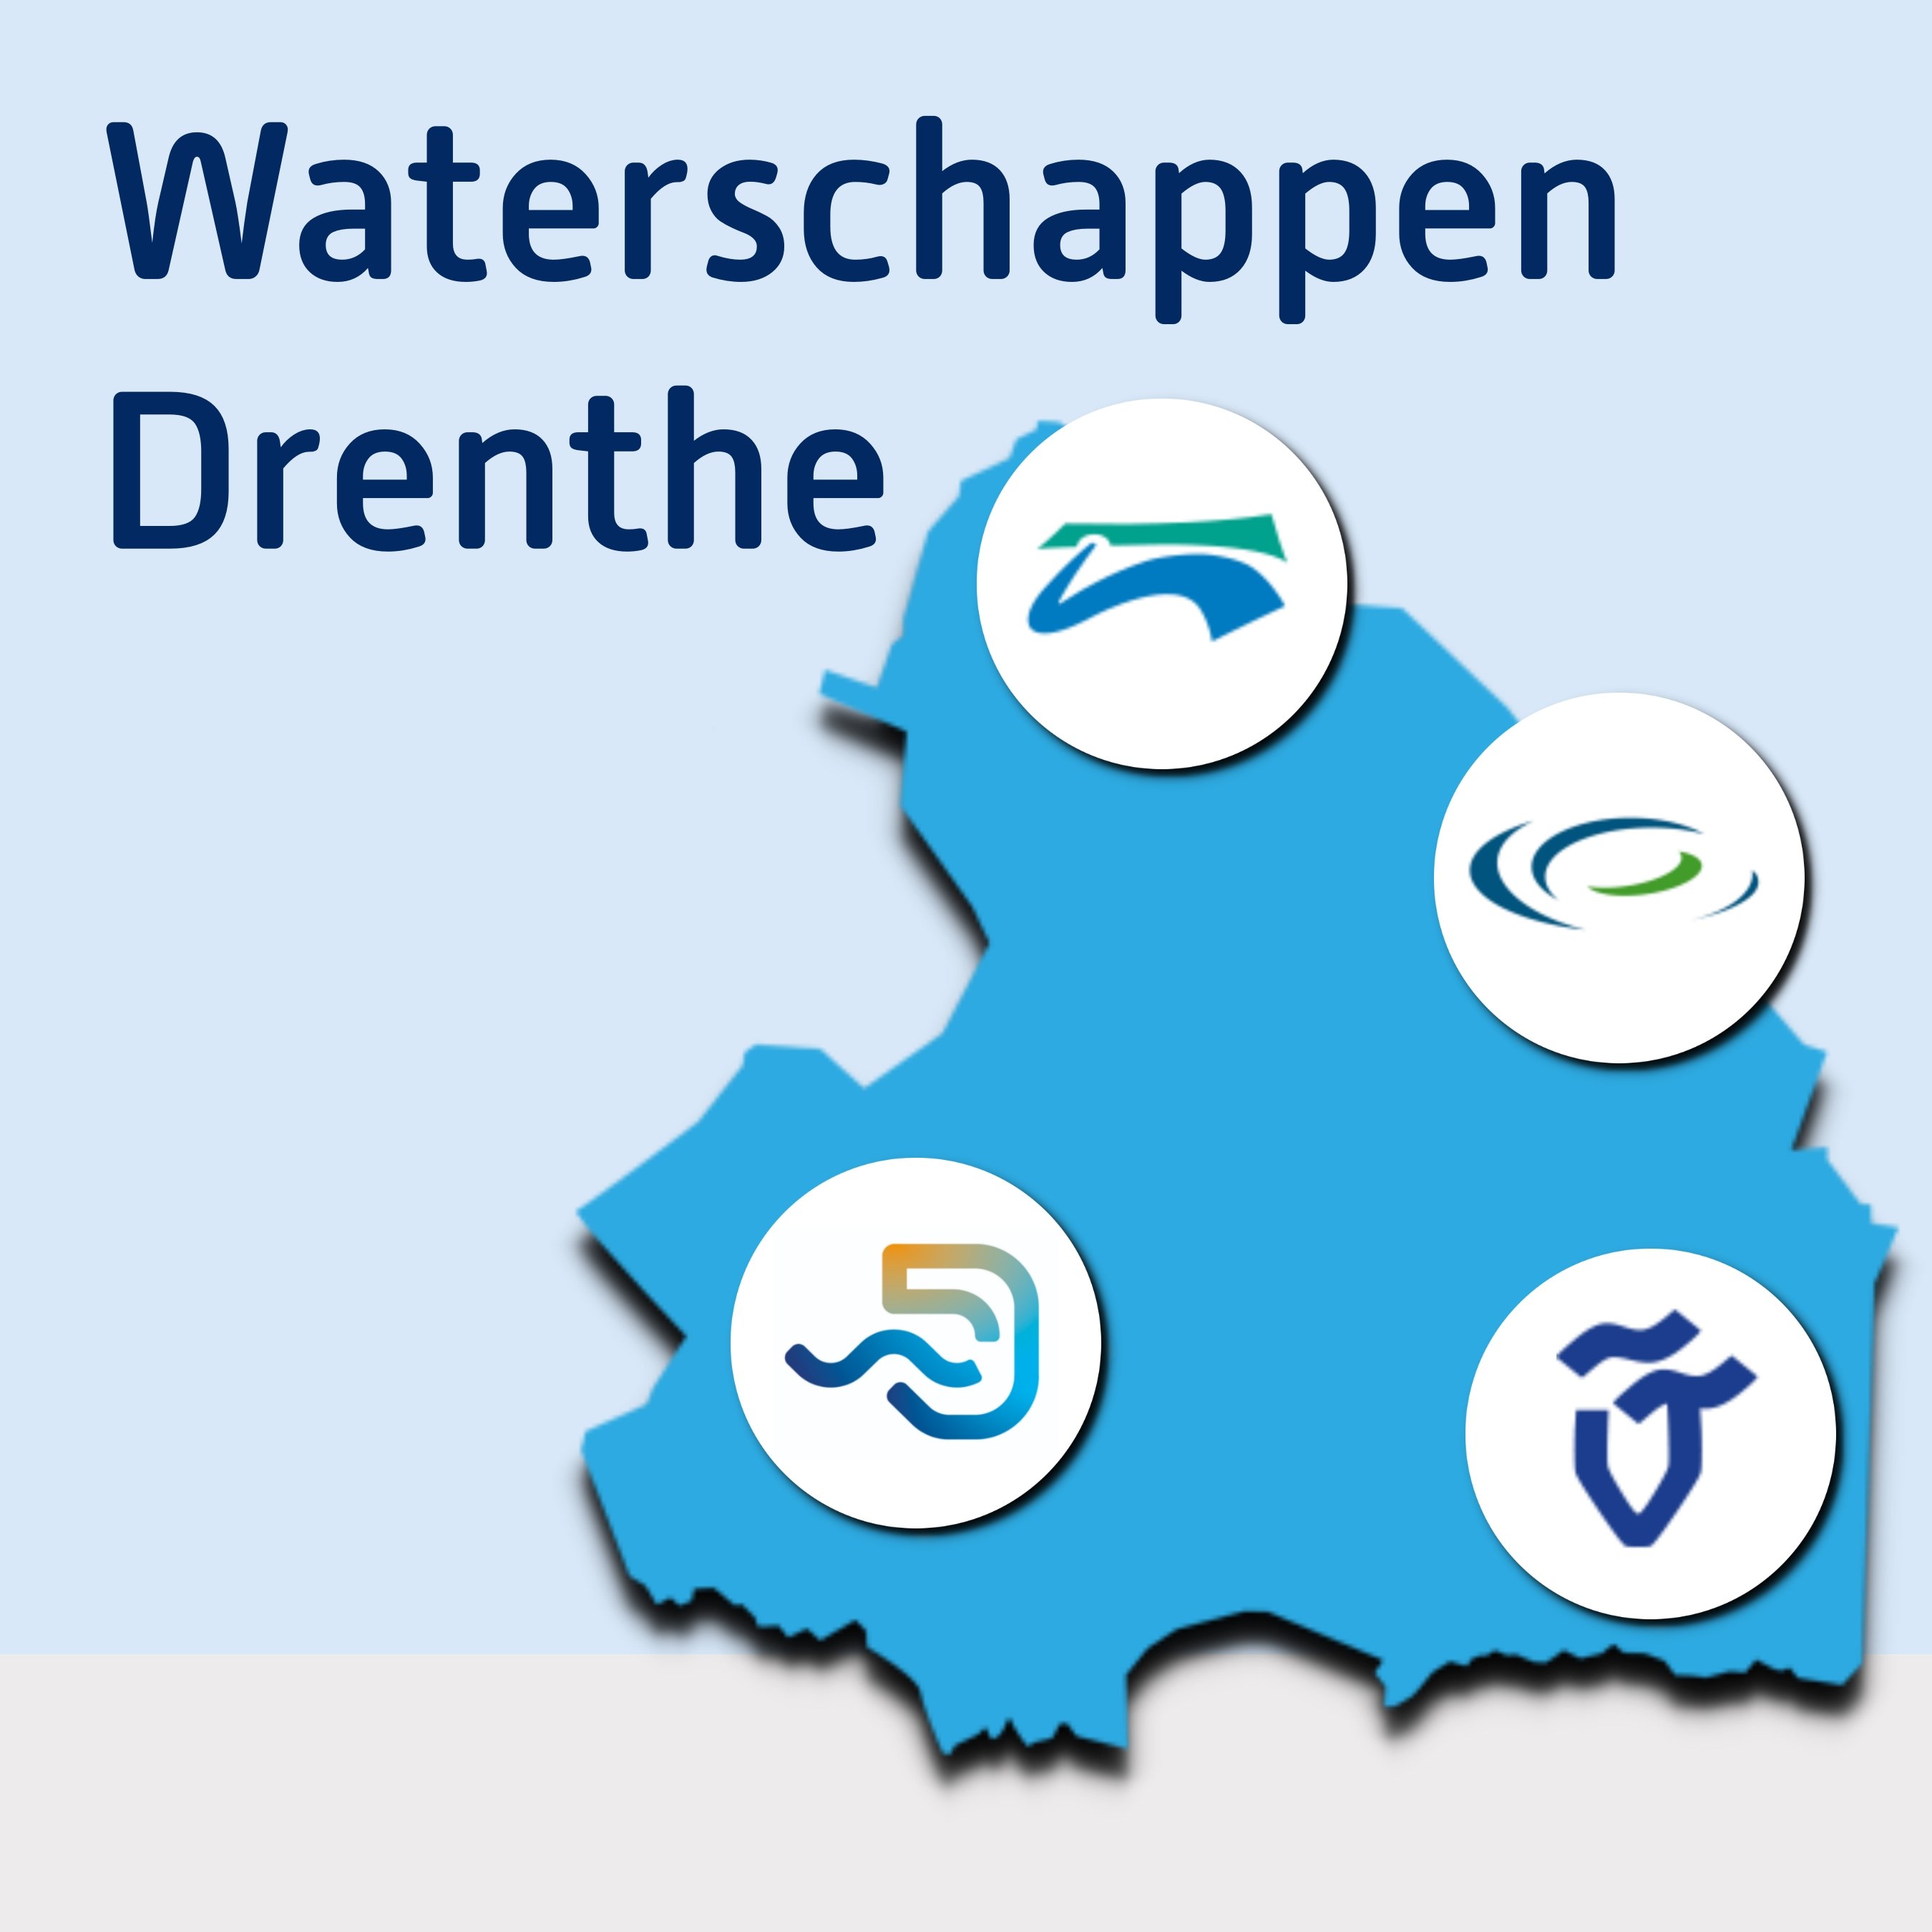 Waterschappen Drenthe NIEUW.jpg